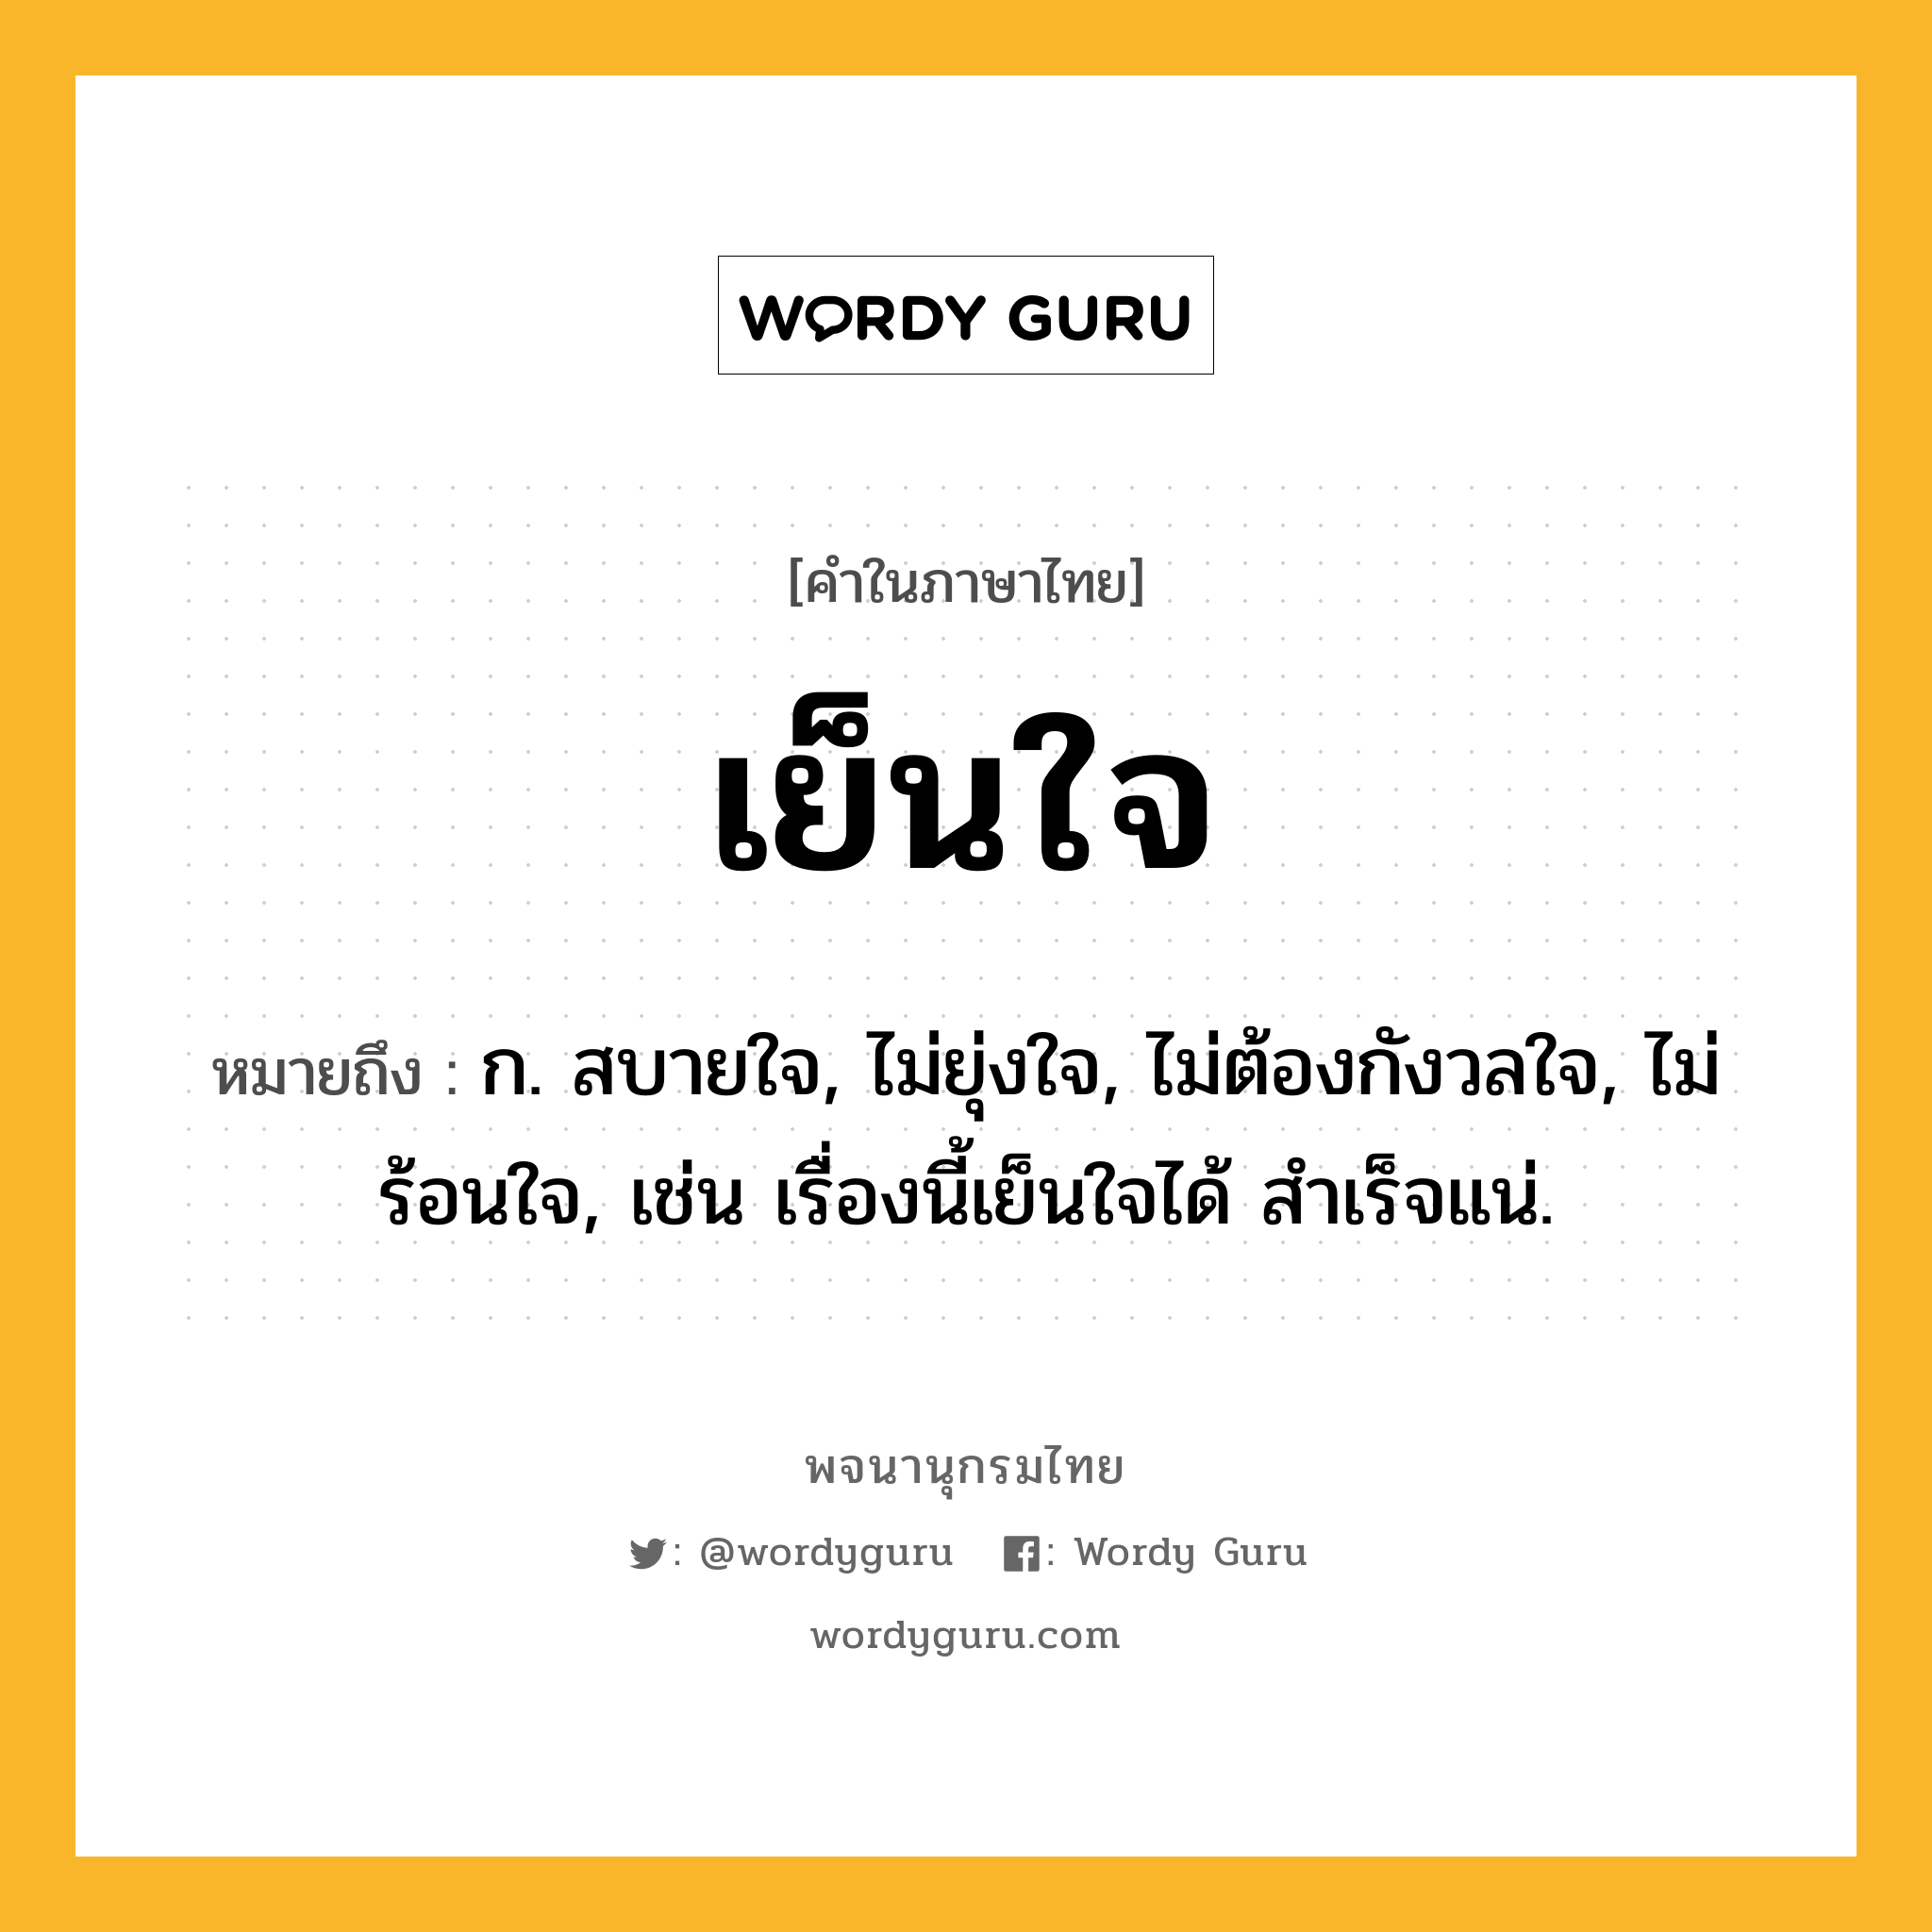 เย็นใจ หมายถึงอะไร?, คำในภาษาไทย เย็นใจ หมายถึง ก. สบายใจ, ไม่ยุ่งใจ, ไม่ต้องกังวลใจ, ไม่ร้อนใจ, เช่น เรื่องนี้เย็นใจได้ สำเร็จแน่.